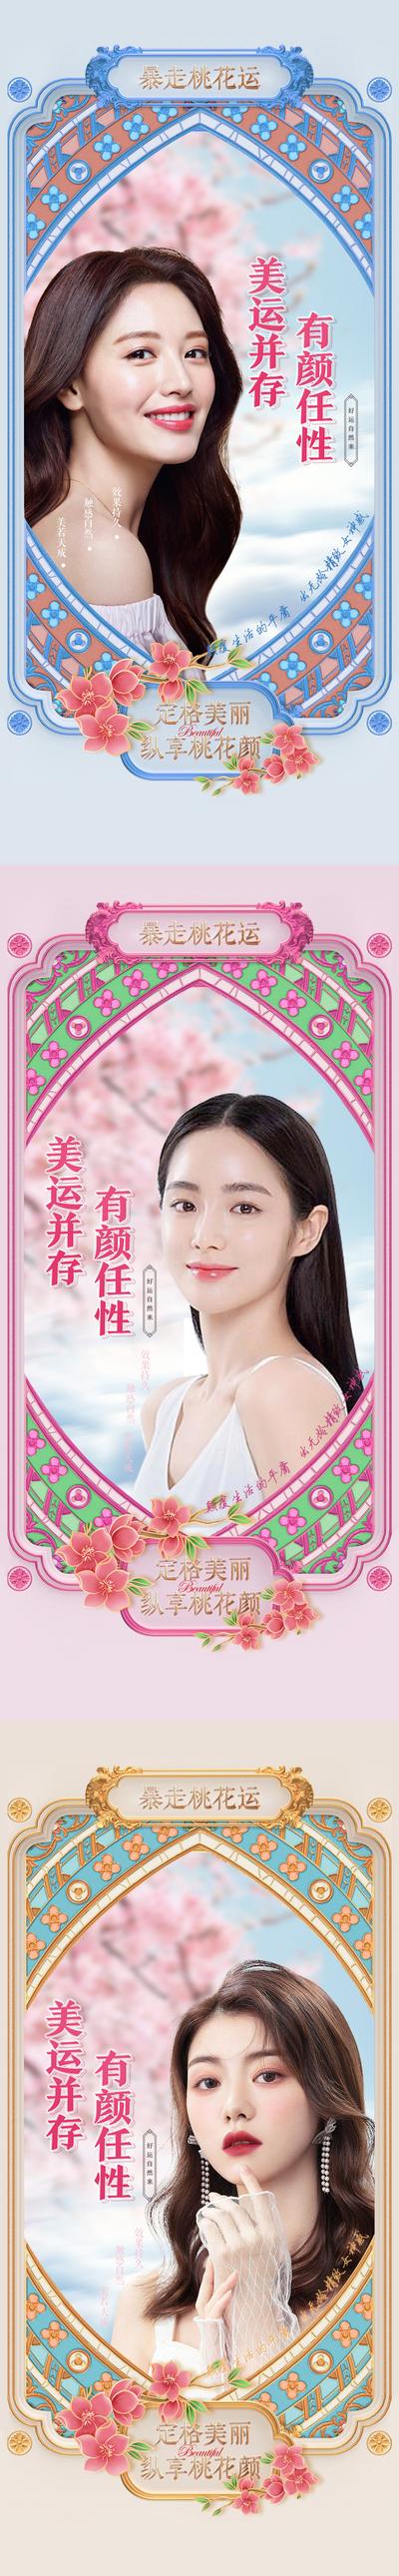 【南门网】广告 海报 地产 人物 定格 美丽 青春 桃花运 相框 系列